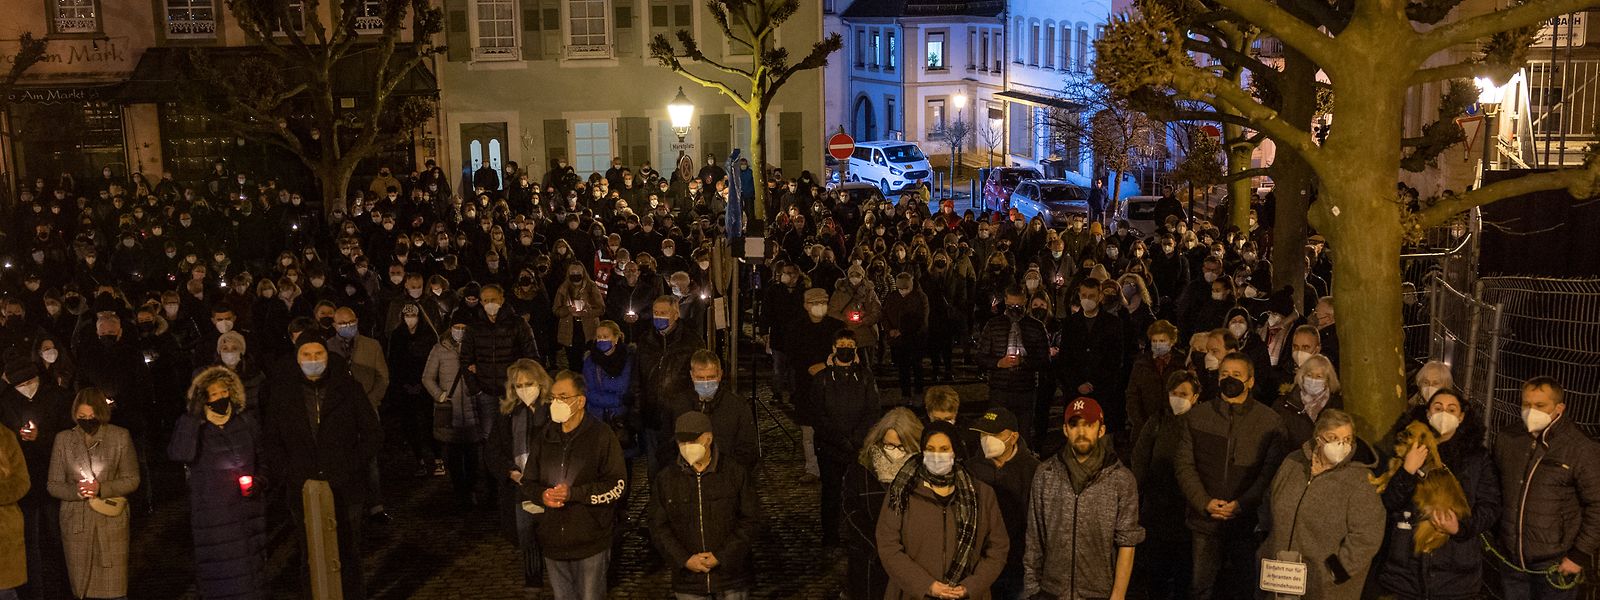 Mehrere hundert Menschen haben sich am Donnerstag in Kusel zur ökumenischen Gedenkfeier für die beiden in der Nacht zu Montag erschossenen Polizisten vor der Stadtkirche versammelt.